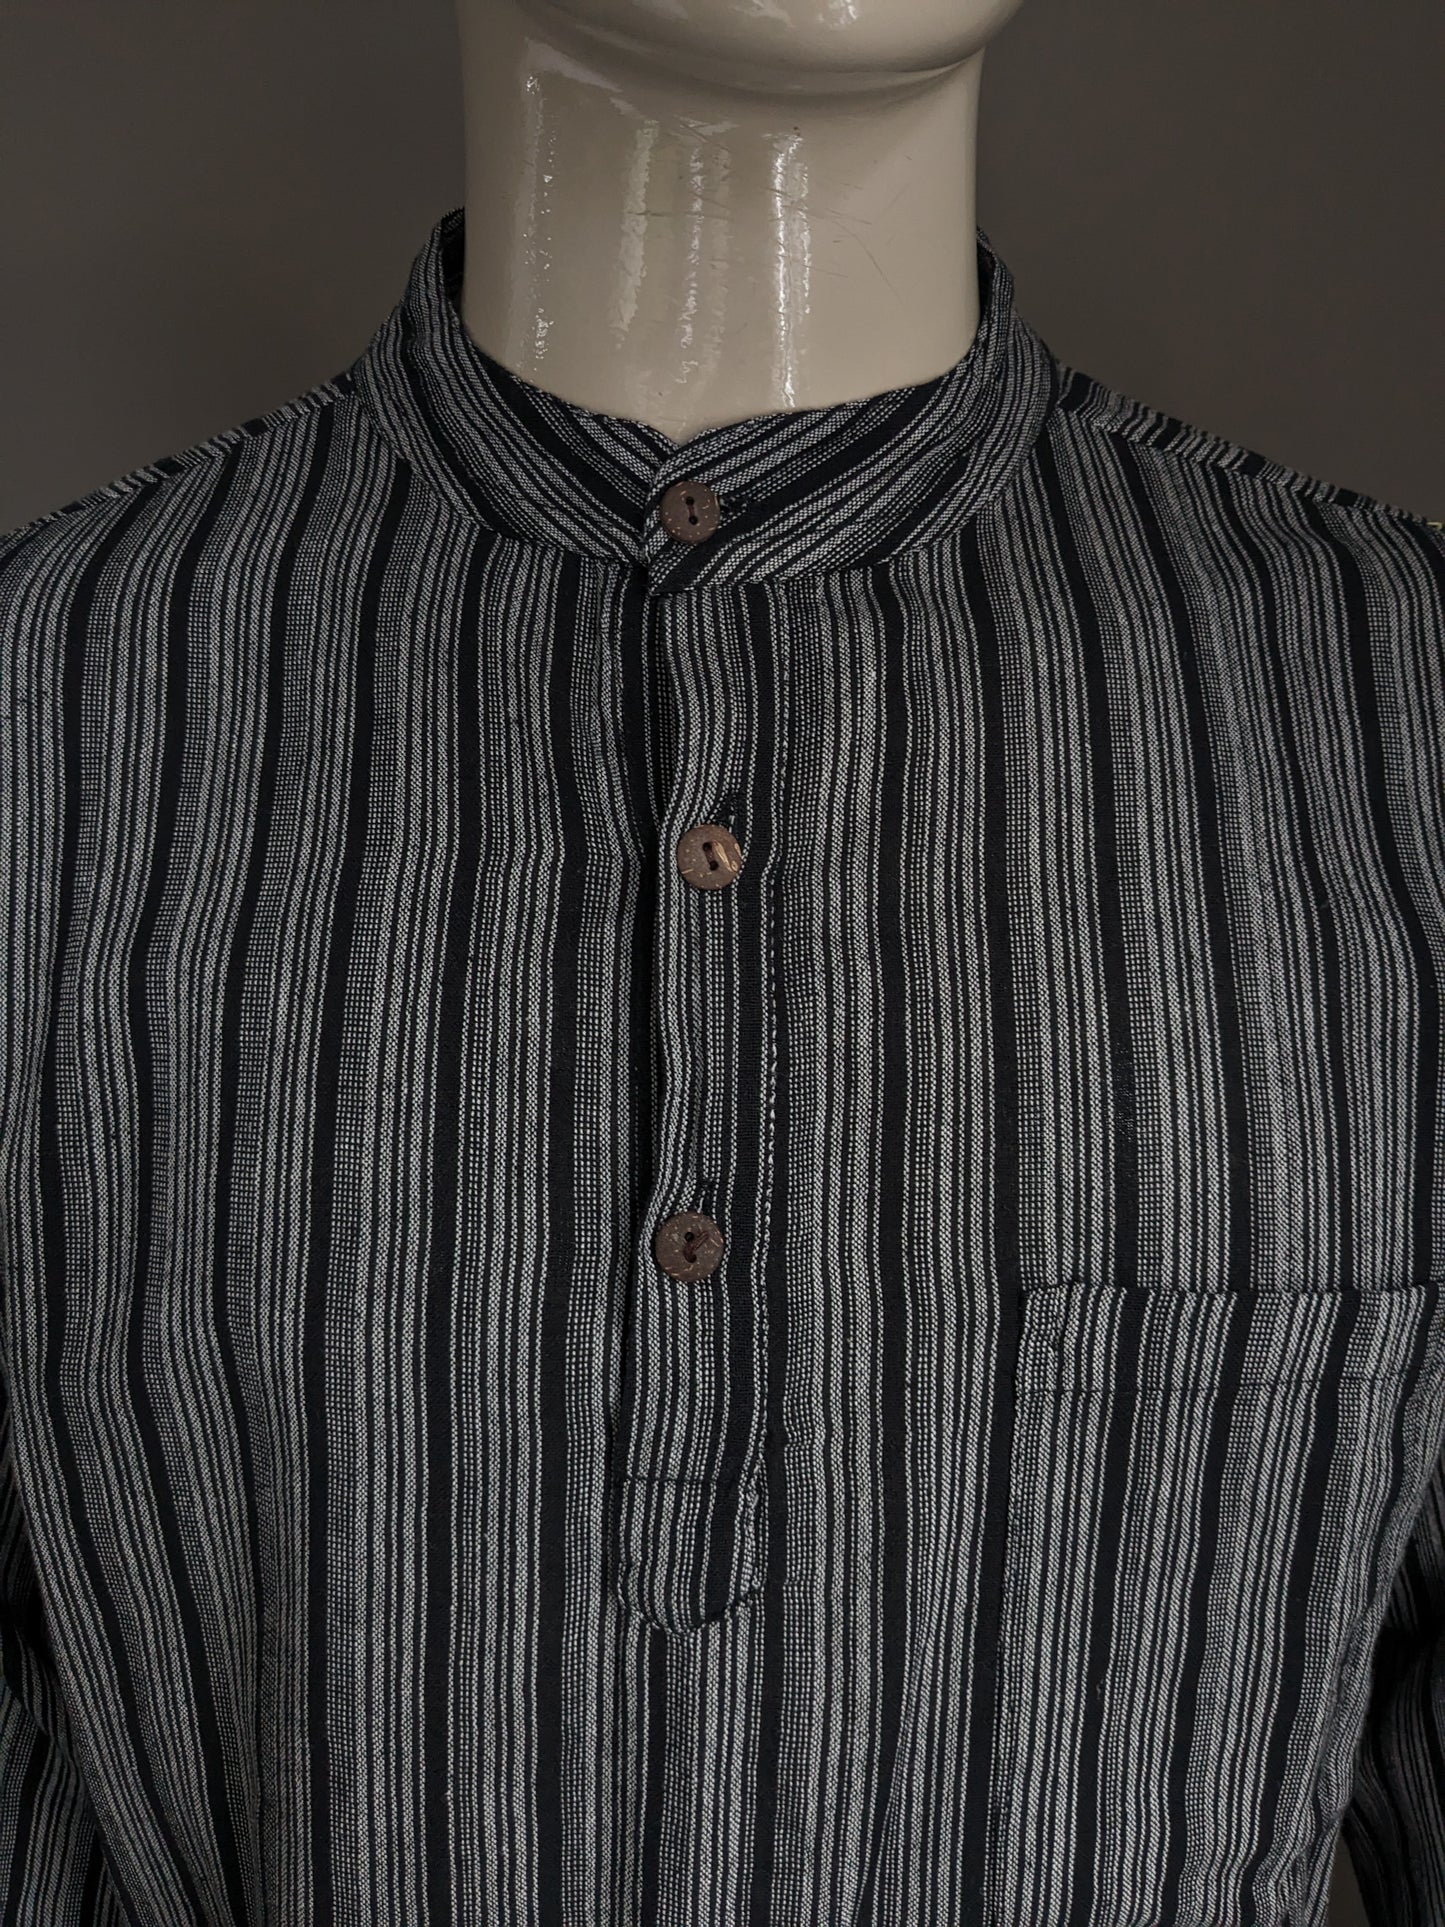 Vintage Yuli Polo -Pullover / Hemd mit erhöhtem / Bauern / Mao -Kragen. Schwarz grau mit Tasche gestreift. Größe xl.